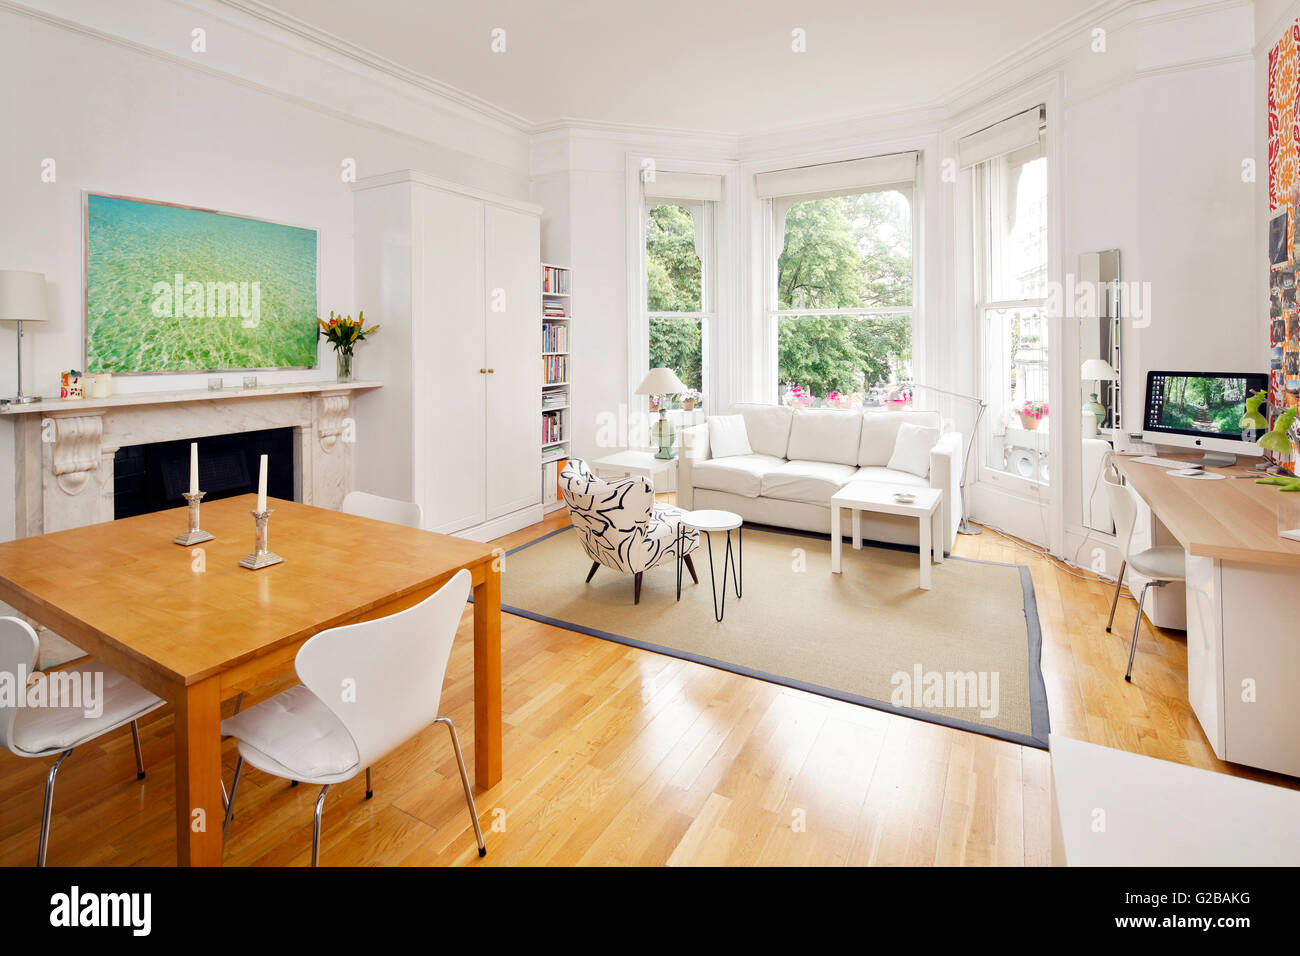 Pembridge Square, Notting Hill. Offene moderne Wohn- und Essbereich. Weiße Möbel mit einem hölzernen Fußböden. Malerei Anove Kamin hängen. Große Fenster. Stockfoto